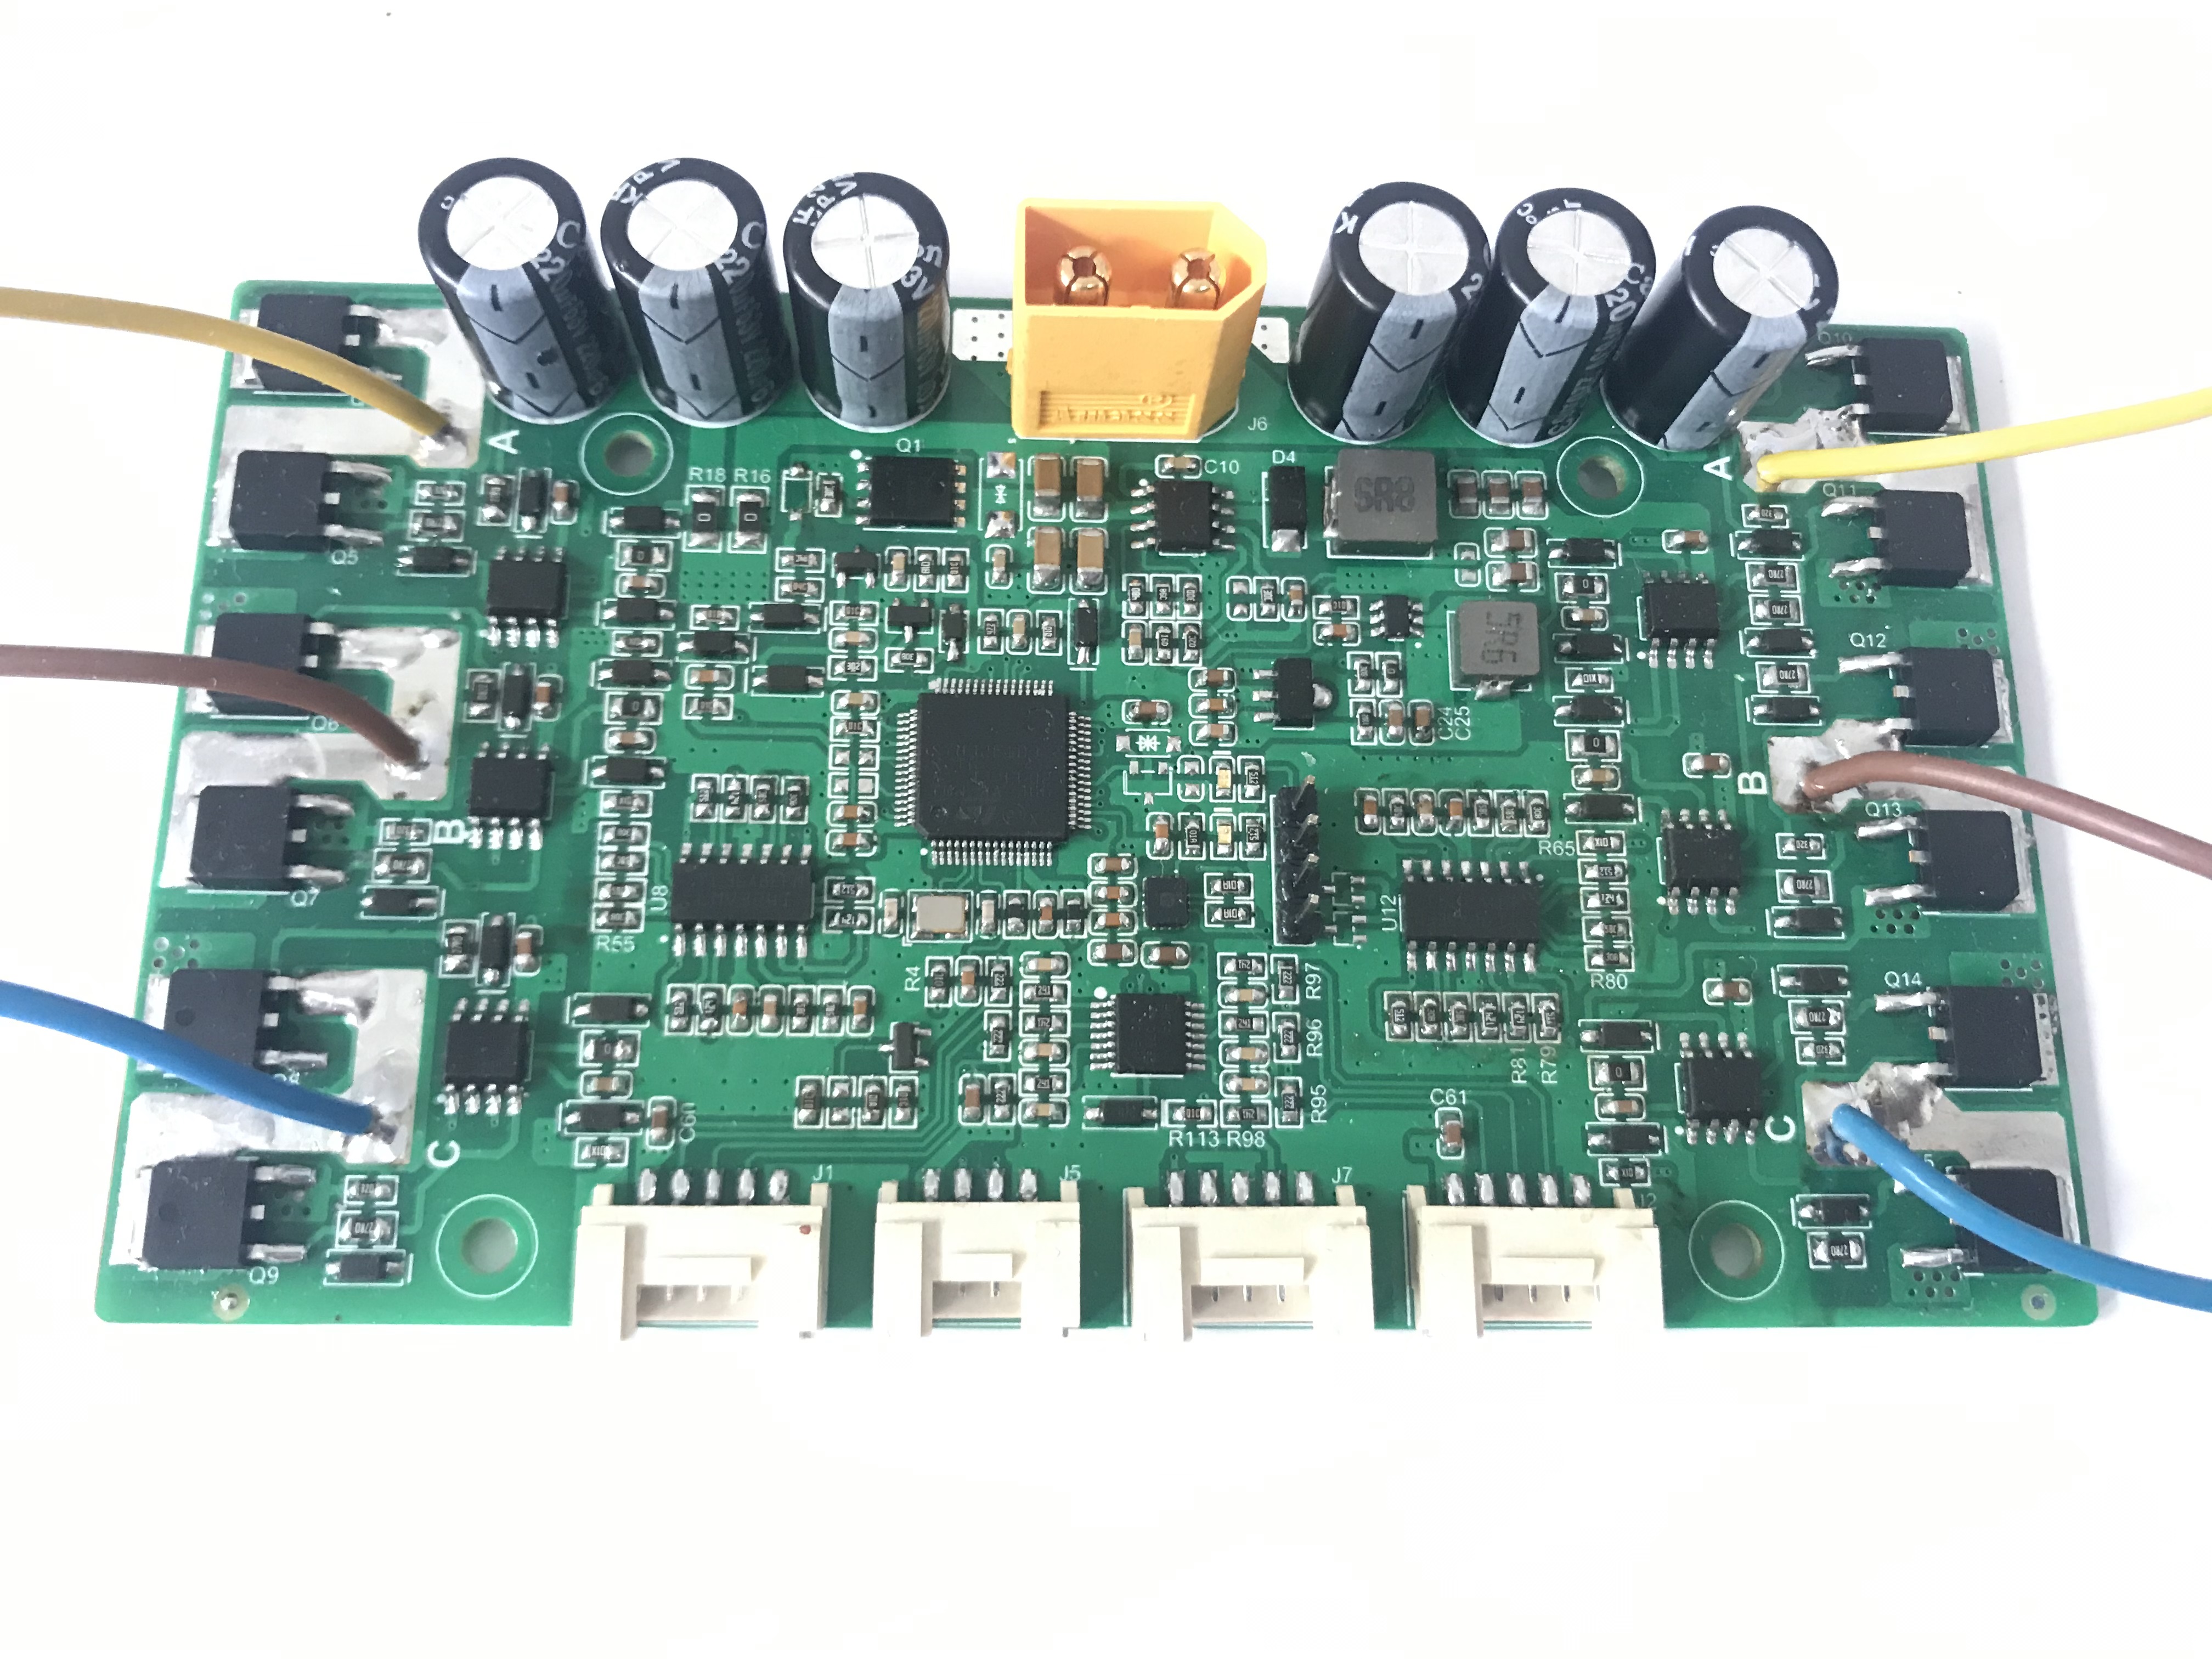 双驱无刷电机控制器，两侧分别带HALL传感器接口！ 板载IMU, 可实现双轮底盘控制器的所有功能！ 可以用作AGV等底盘使用。
1、额定电压：15-42V 最大支持电流：≤30A；
2、控制接口为串口，可定制协议，实现速度环和角速度环控制；
3、板载接口可实现外部按键开关机；